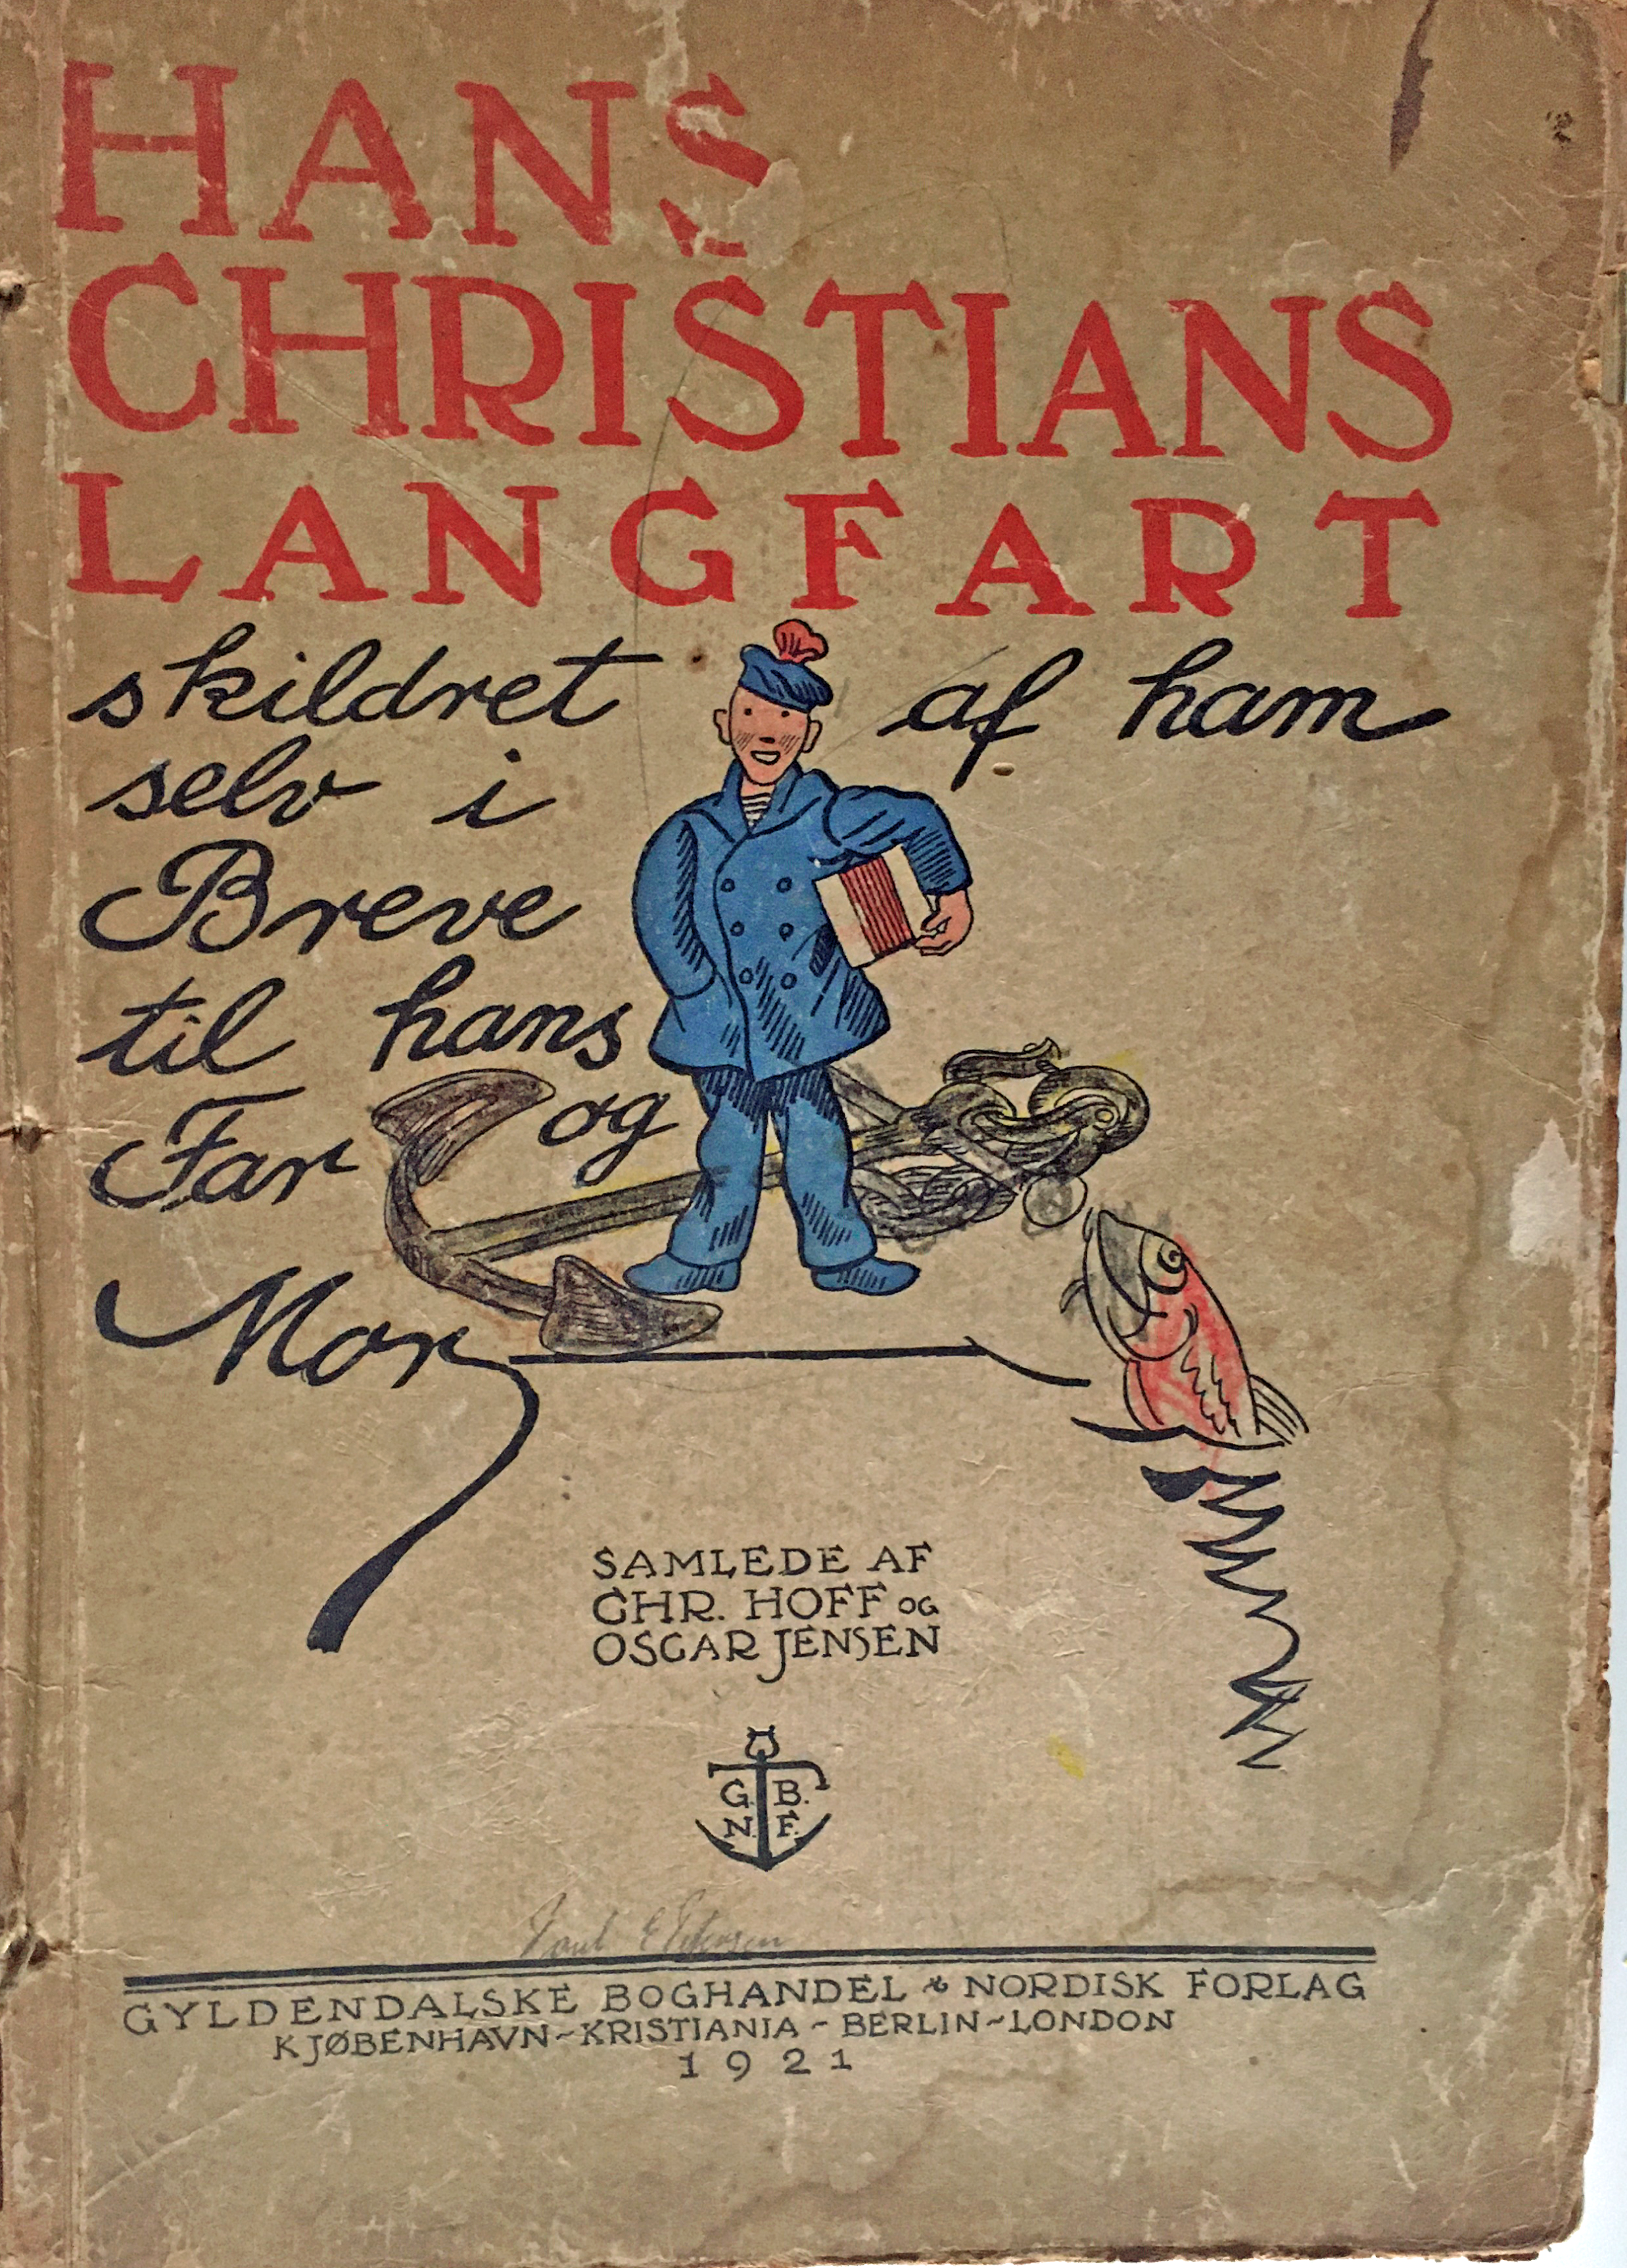 Hans Christians langfart - Chr Hoff og Oscar Jensen 1921